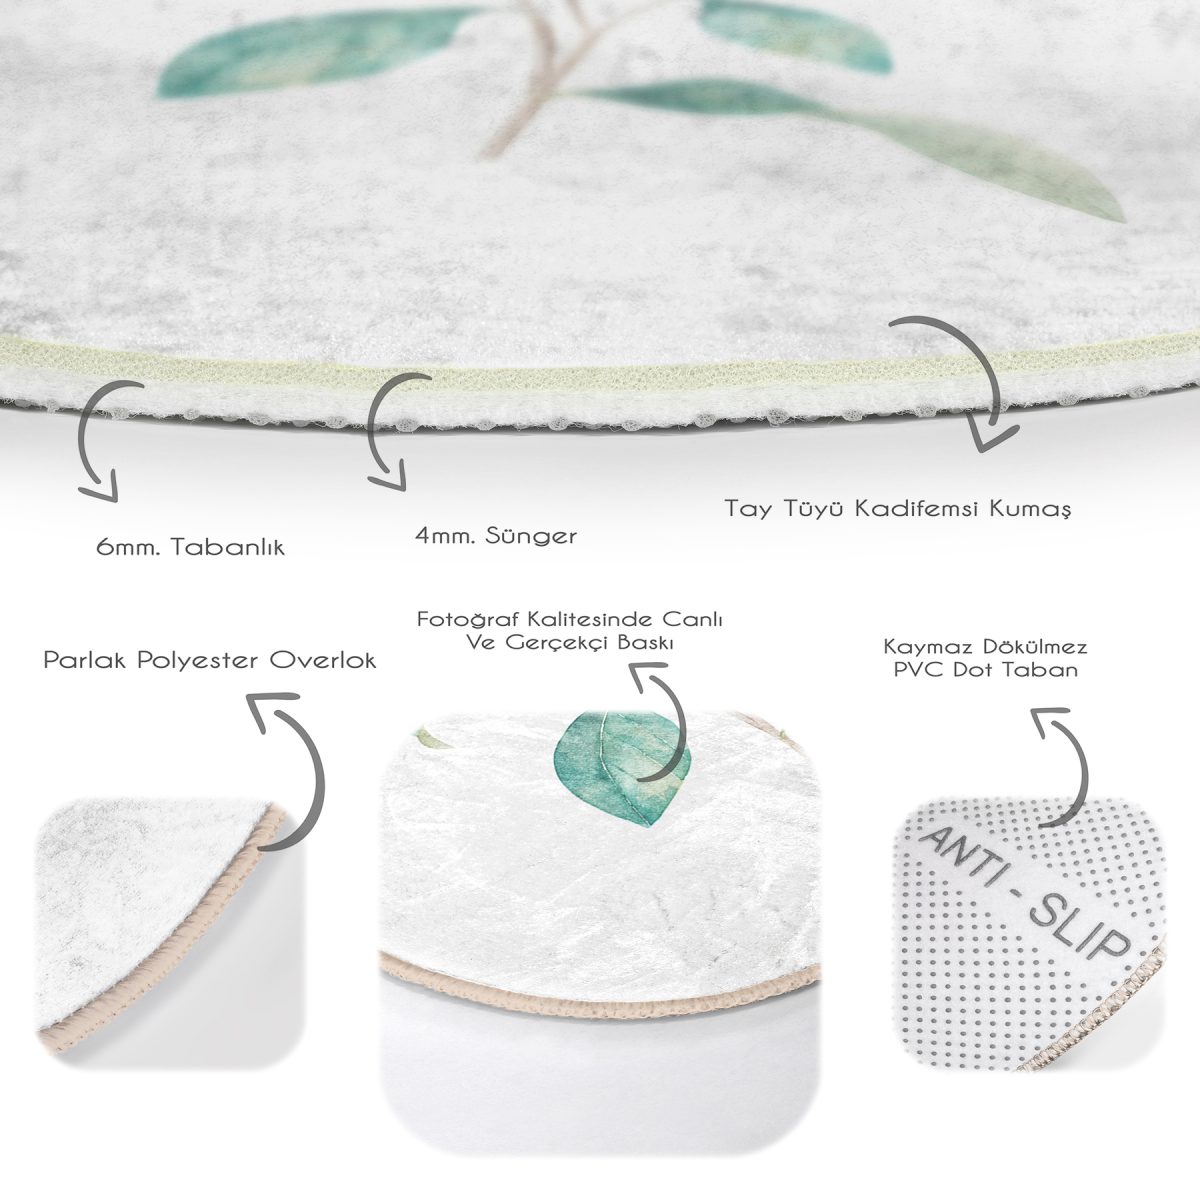 Beyaz Zeminli Renkli Ortanca Çiçek Motifli Dijital Baskılı Modern Pembe Banyo Yıkanabilir Kaymaz Tabanlı Yuvarlak Halı Realhomes